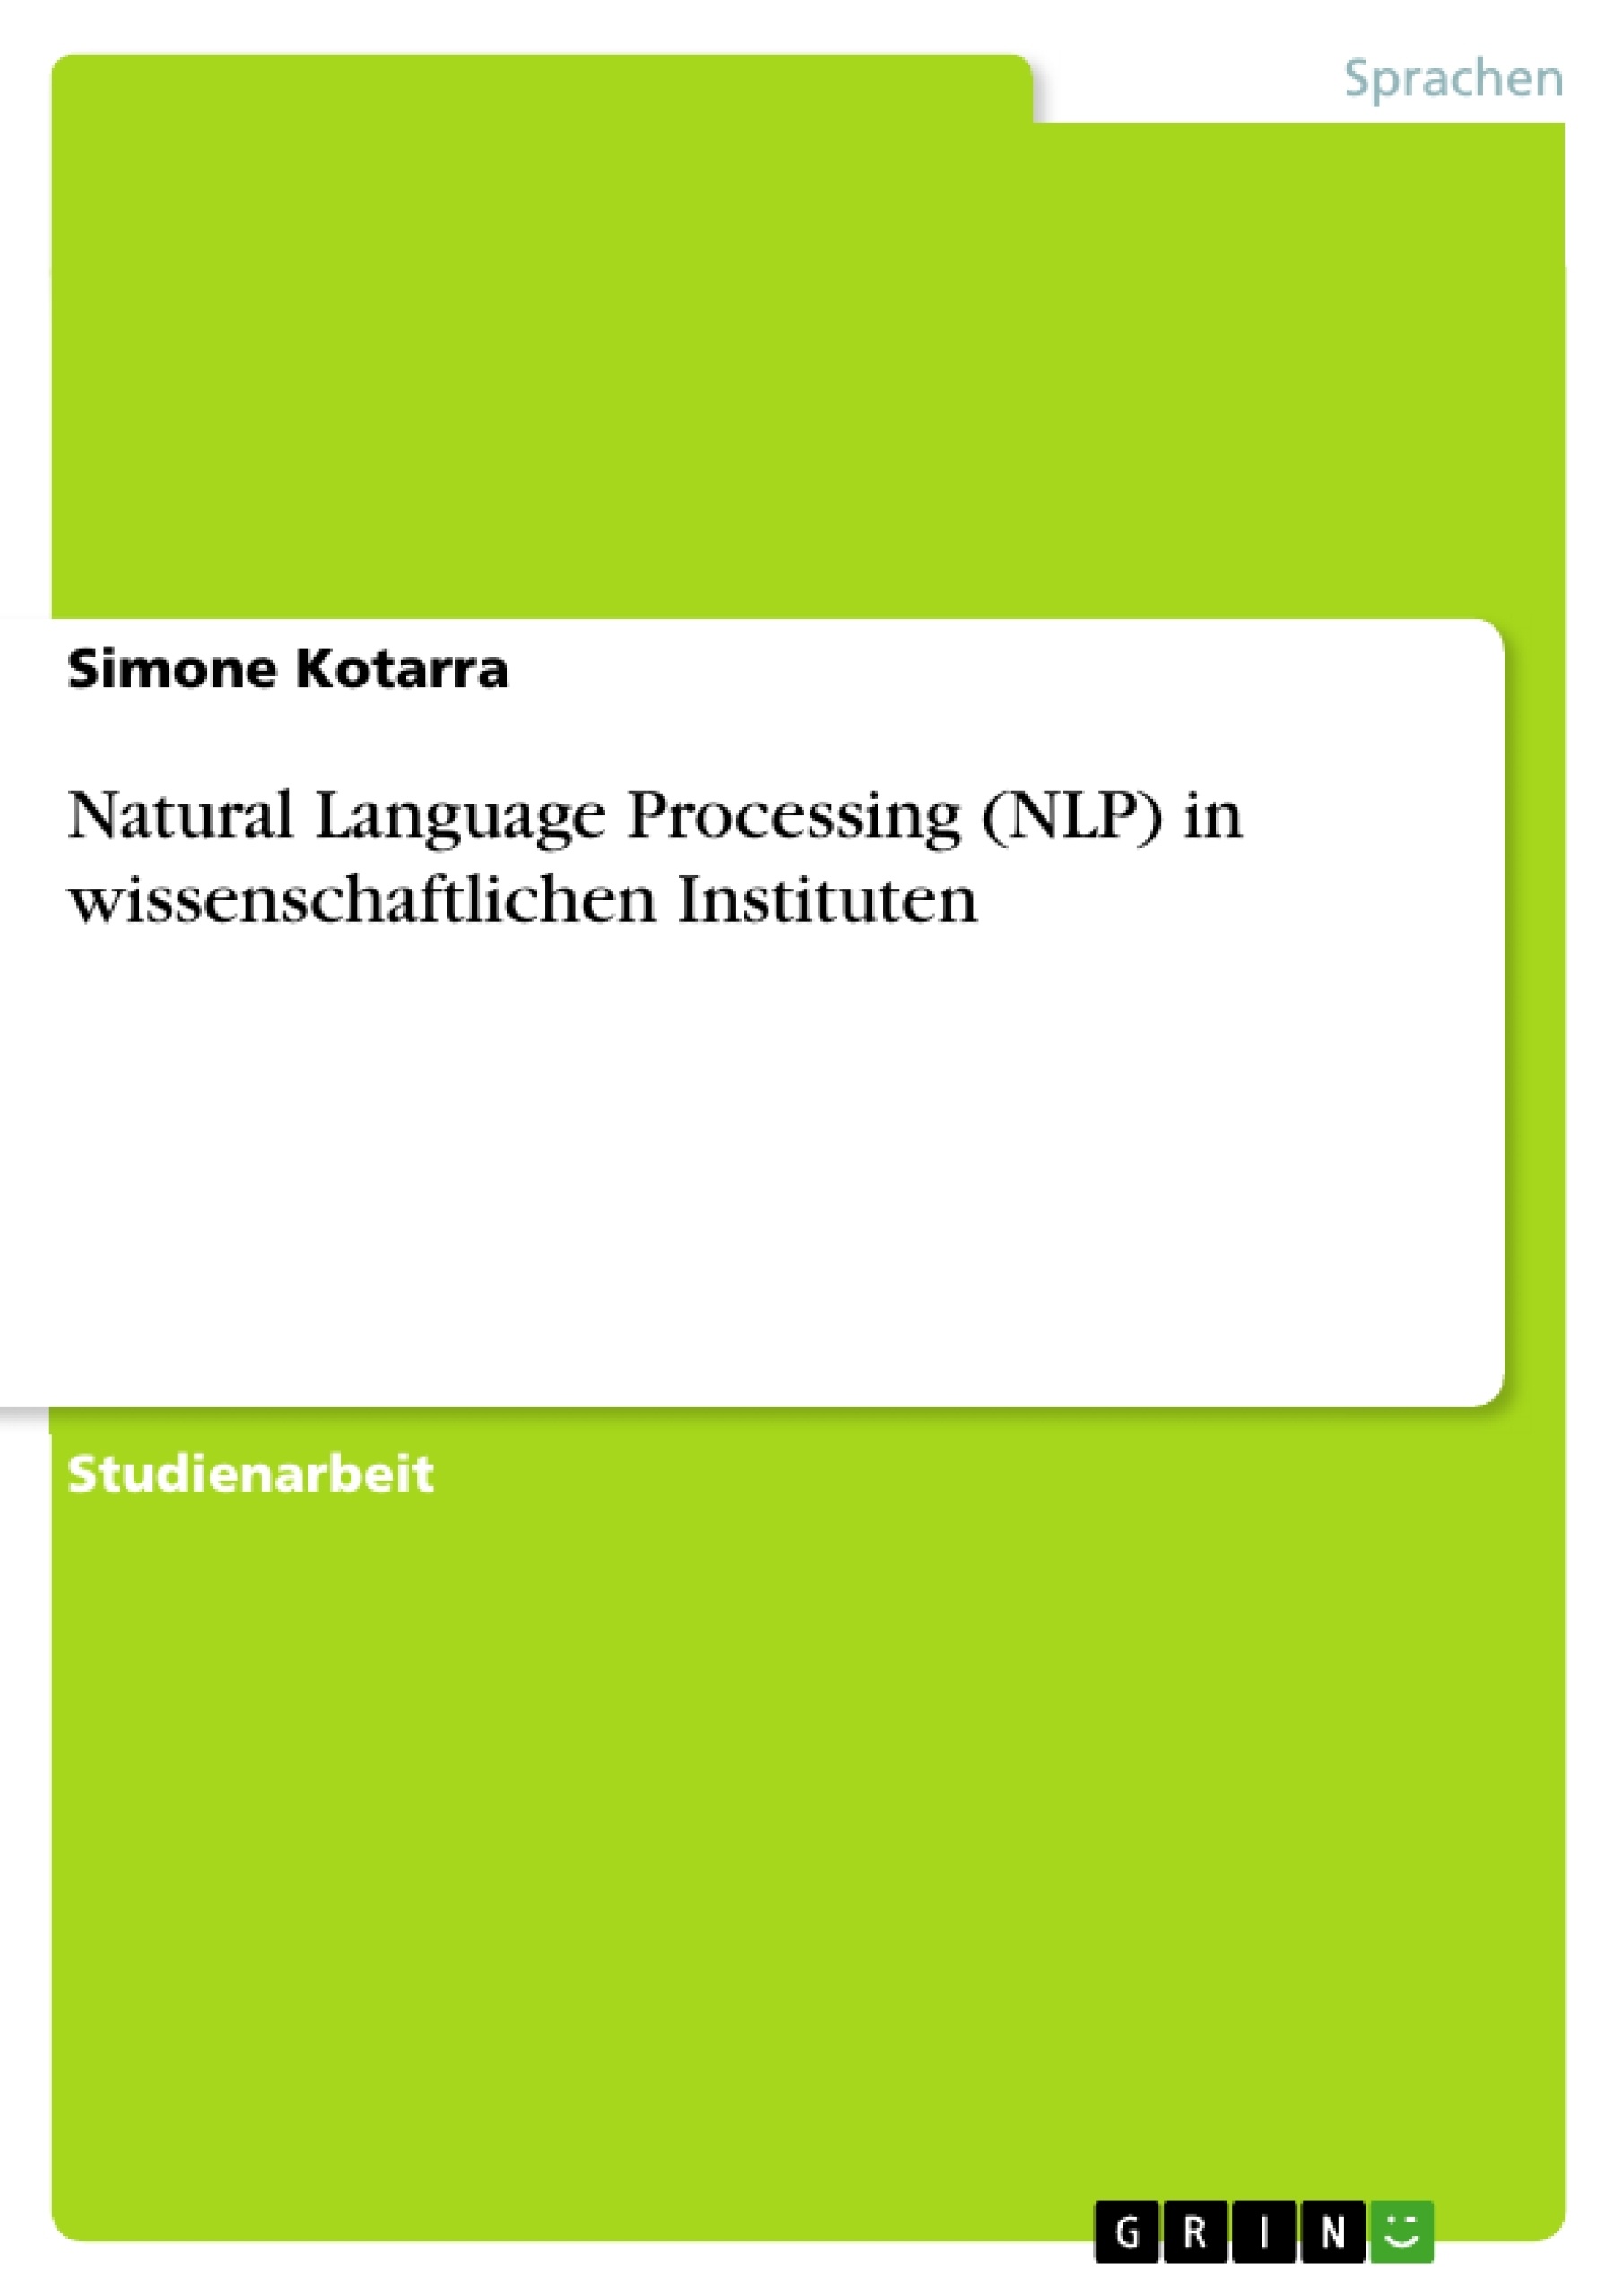 Title: Natural Language Processing (NLP) in wissenschaftlichen Instituten